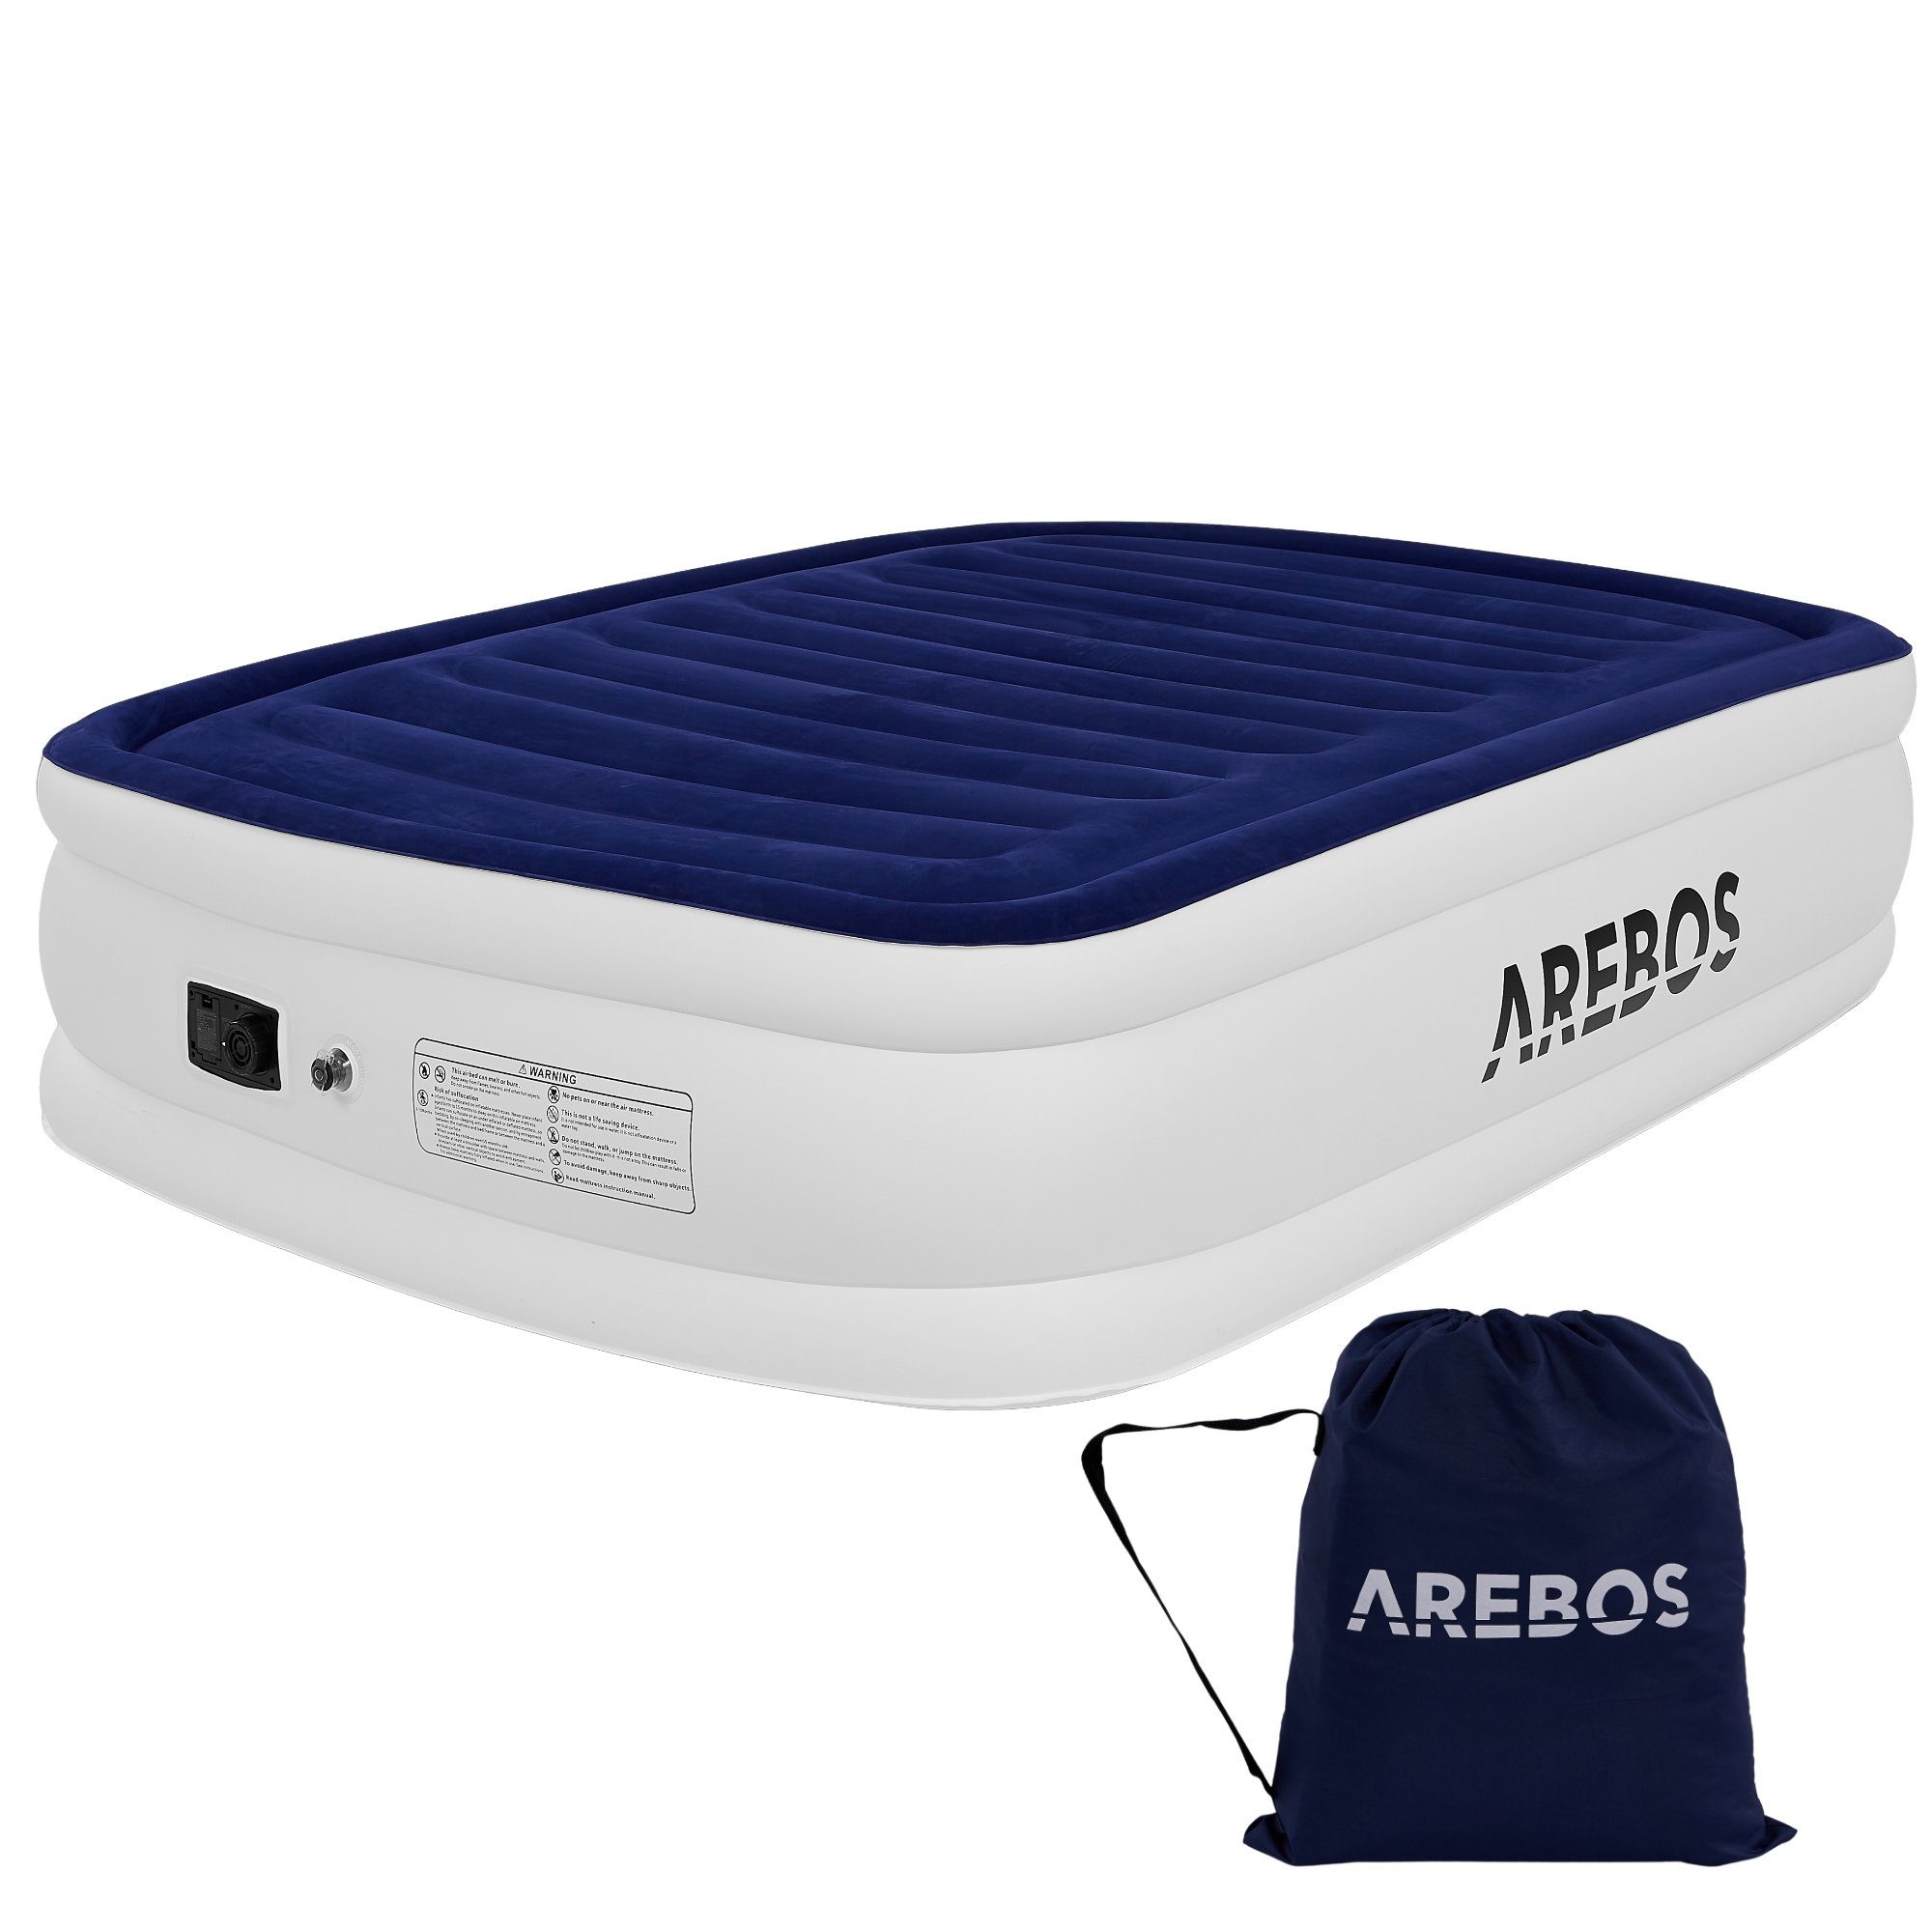 Arebos Luftbett Luftmatratze Aufblasbare Matratze Selbstaufblasend mit Pumpe, (Stück, Blau / Weiß Doppel)